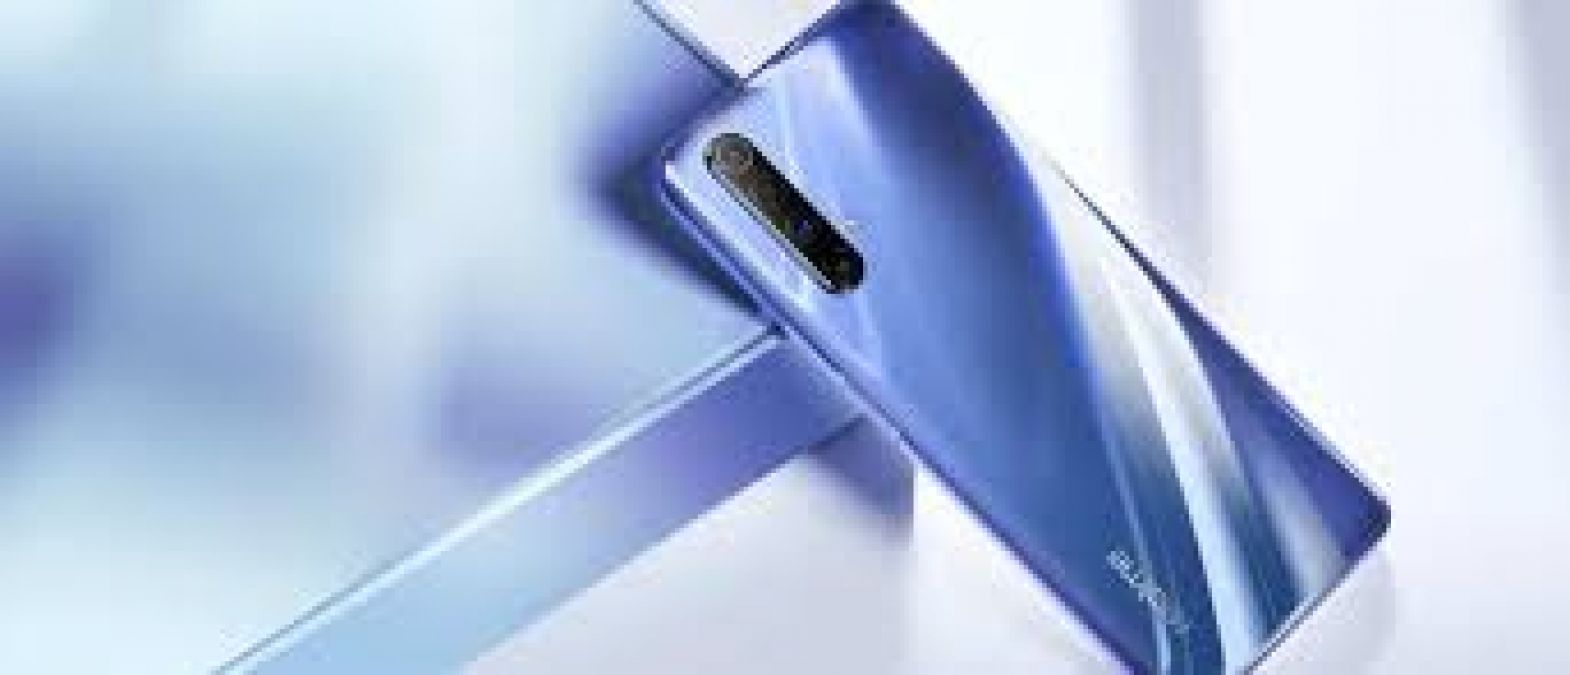 Realme X50t सर्टिफिकेशन साइट पर एक बार फिर हुआ स्पॉट, जानें इसके बारें में ख़ास बातें